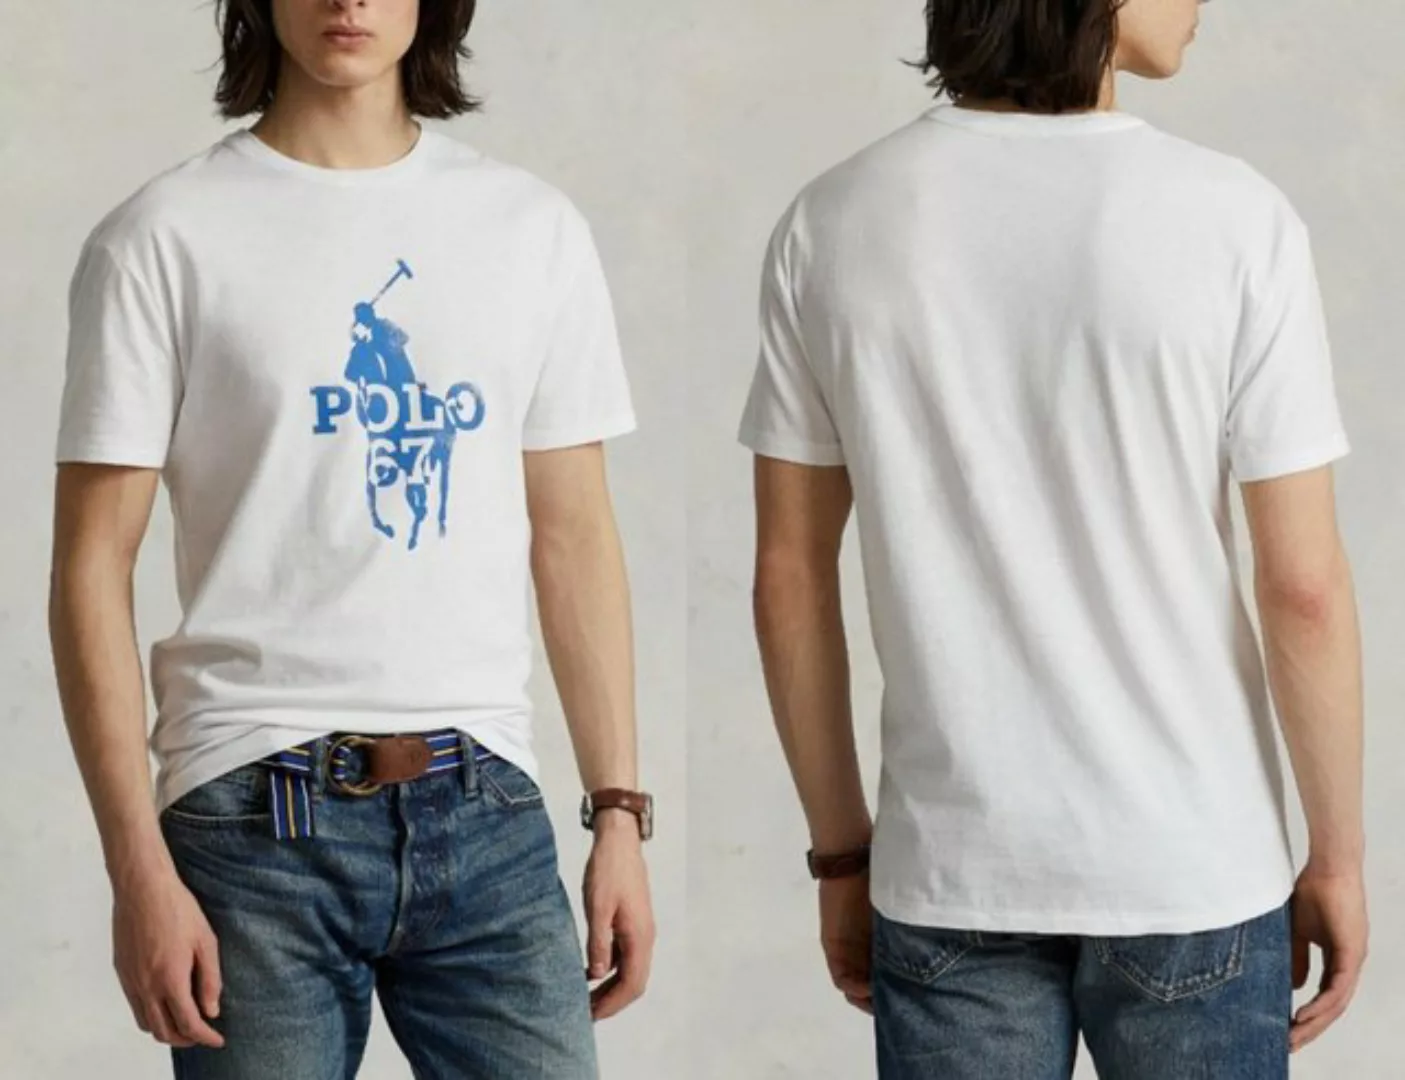 Ralph Lauren T-Shirt Polo Ralph Lauren Polo Player 67 Print T-Shirt Shirt C günstig online kaufen